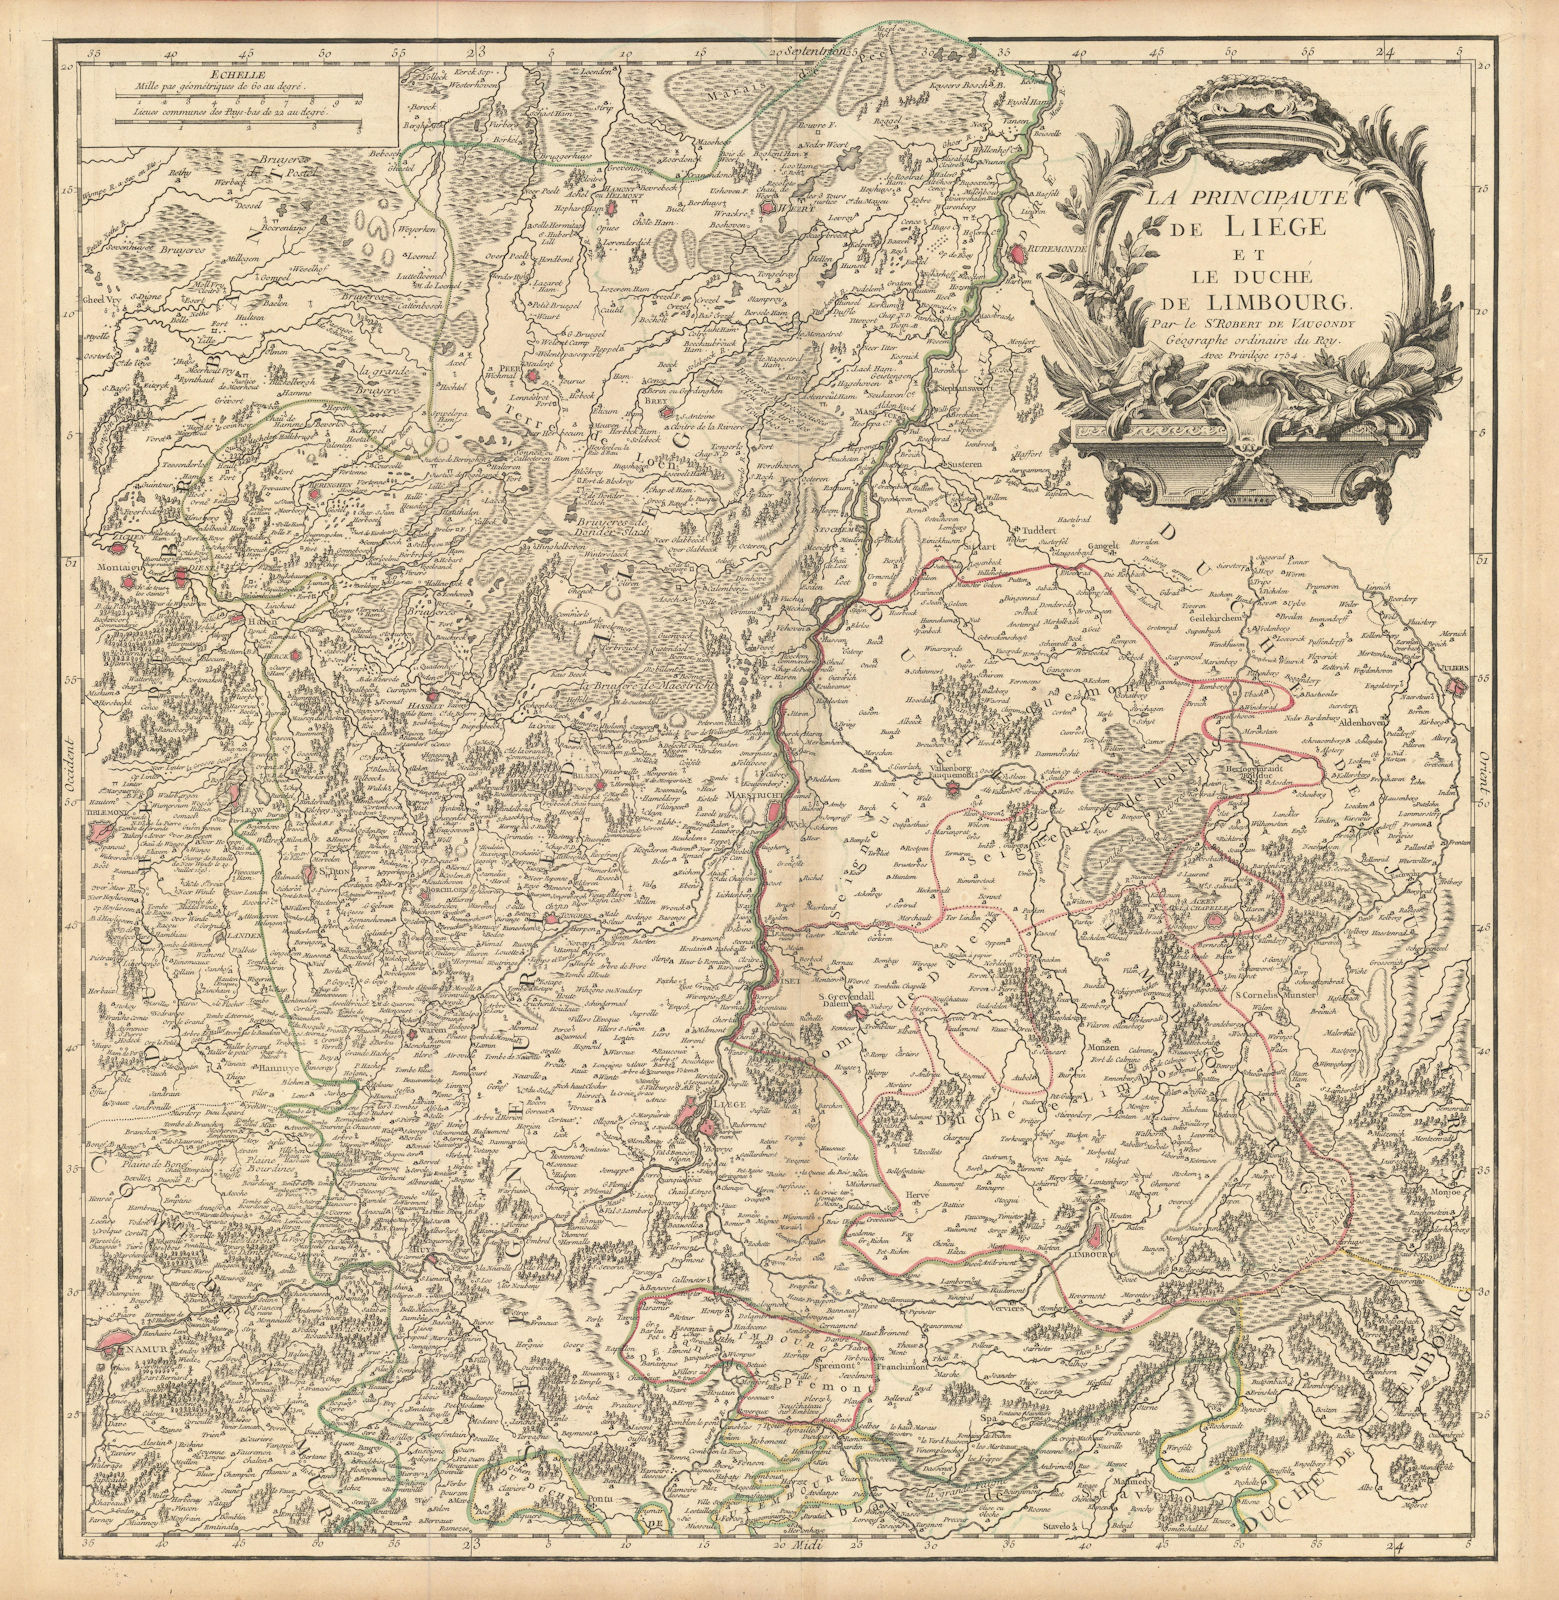 "La Principauté de Liege et le Duché de Limbourg". NL Belgium. VAUGONDY 1754 map